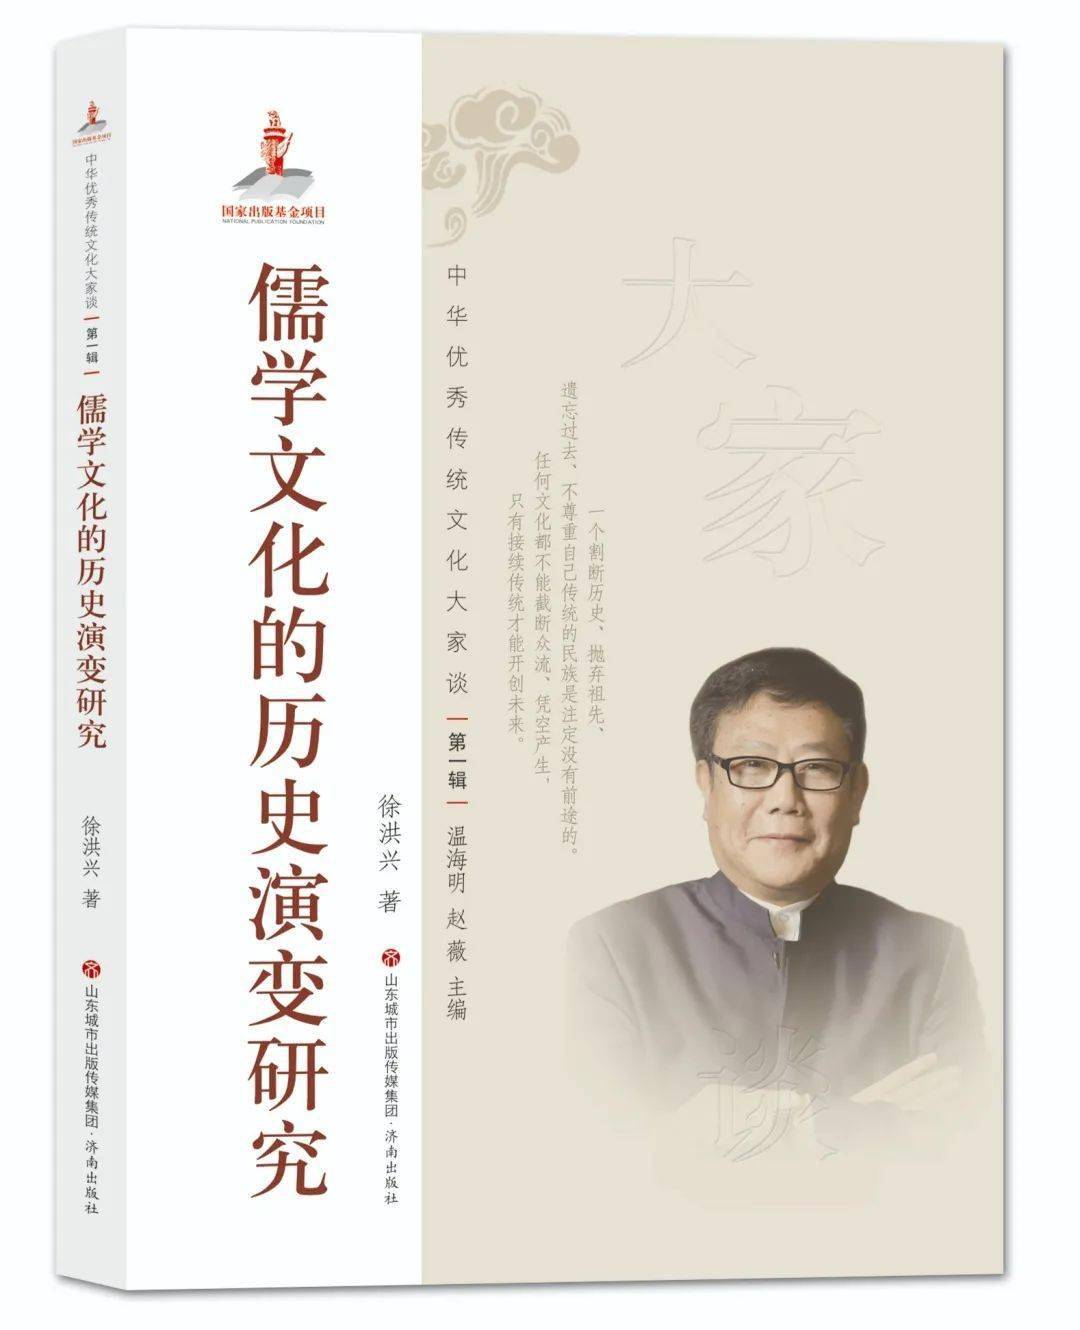 “现象学与儒学——张祥龙先生《儒家哲学史讲演录》新书座谈会暨学术研讨会